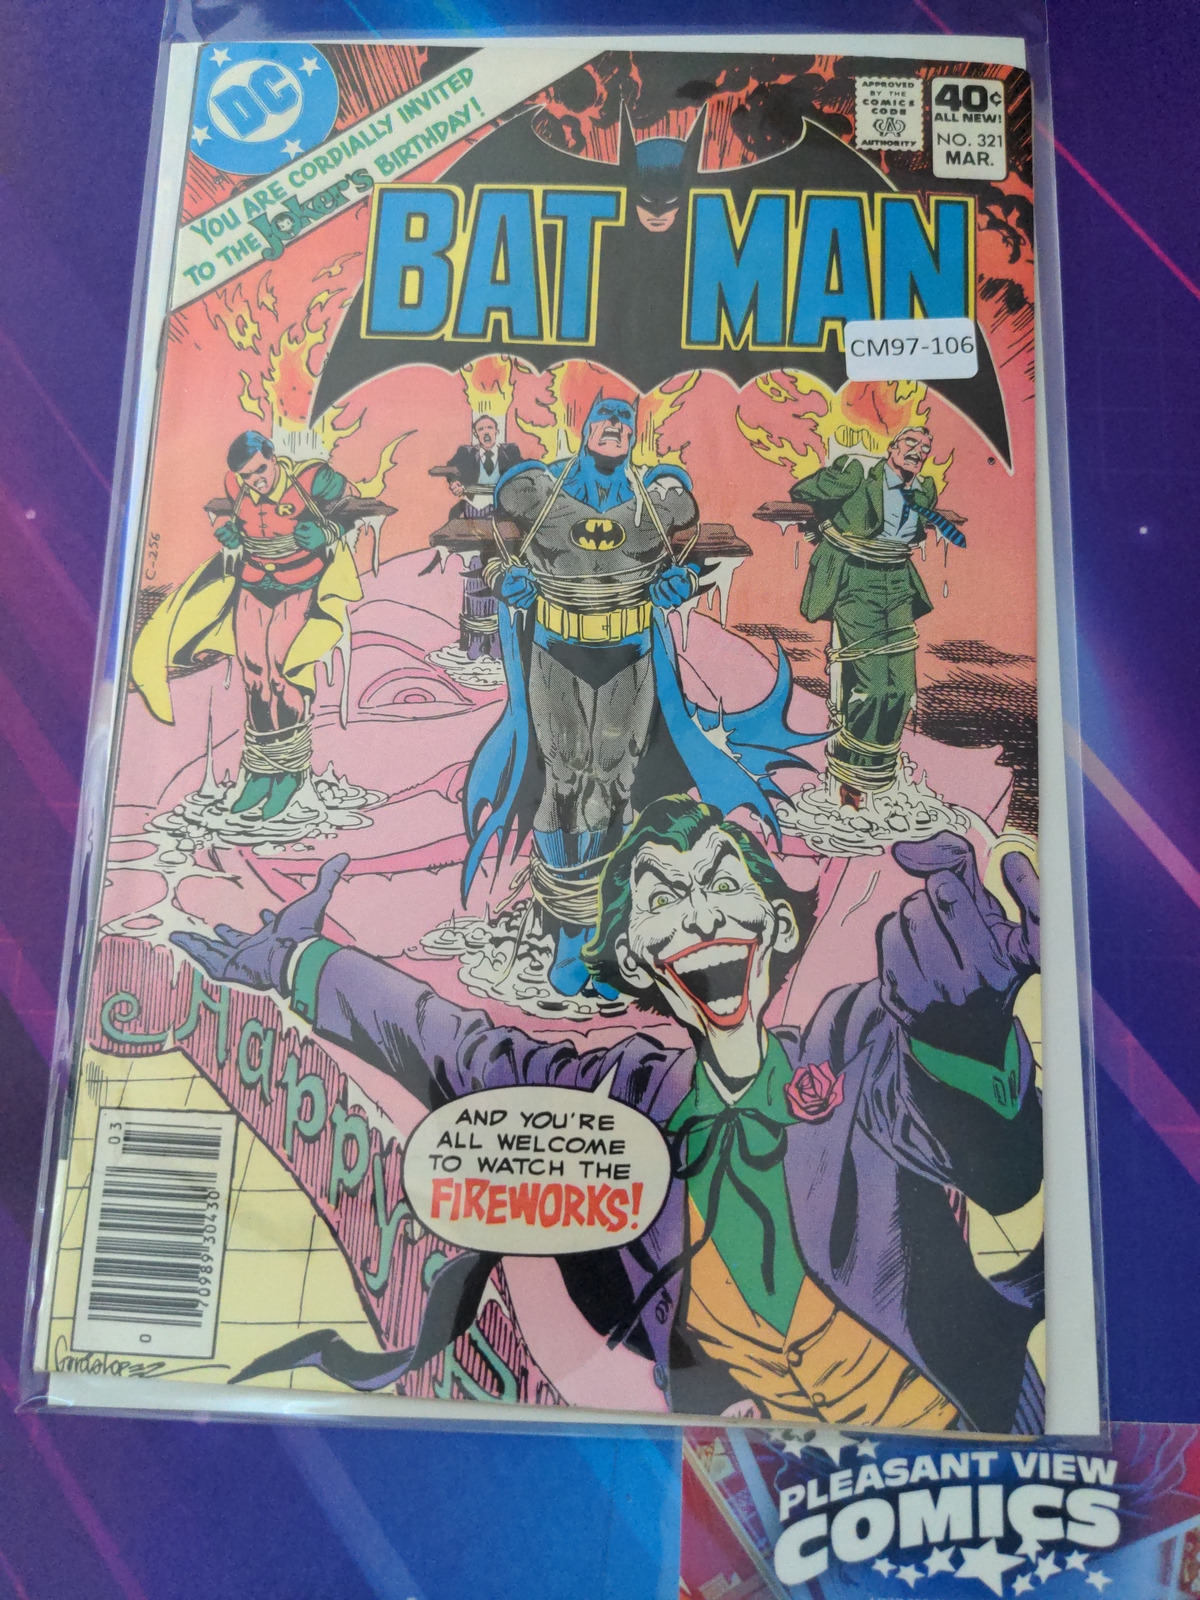 BATMAN #321 VOL. 1 8.0 (JOKER) NEWSSTAND DC COMIC BOOK CM97-106